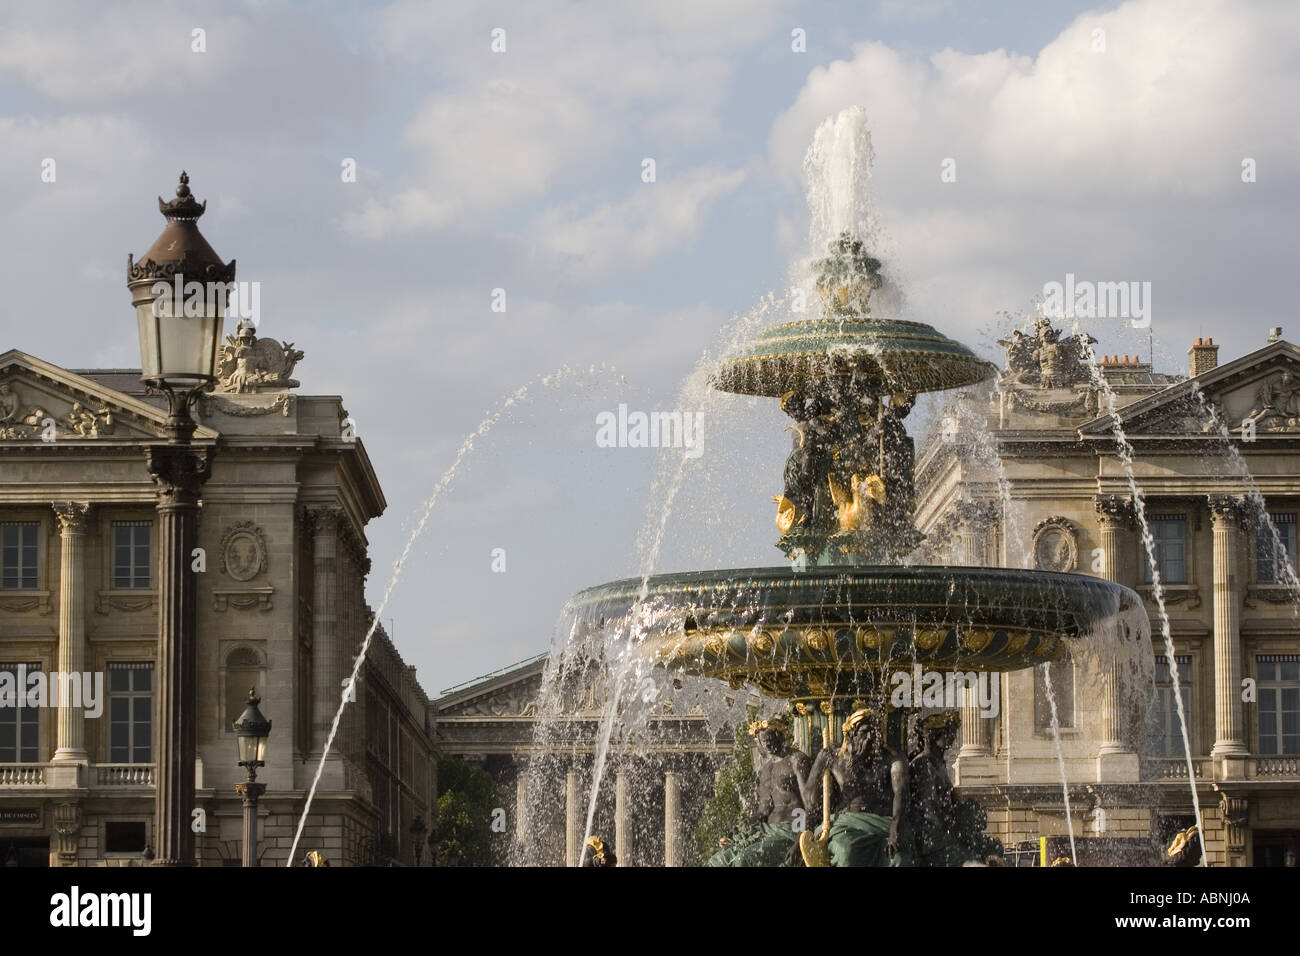 Fountain at Place de la Concorde Paris France Stock Photo